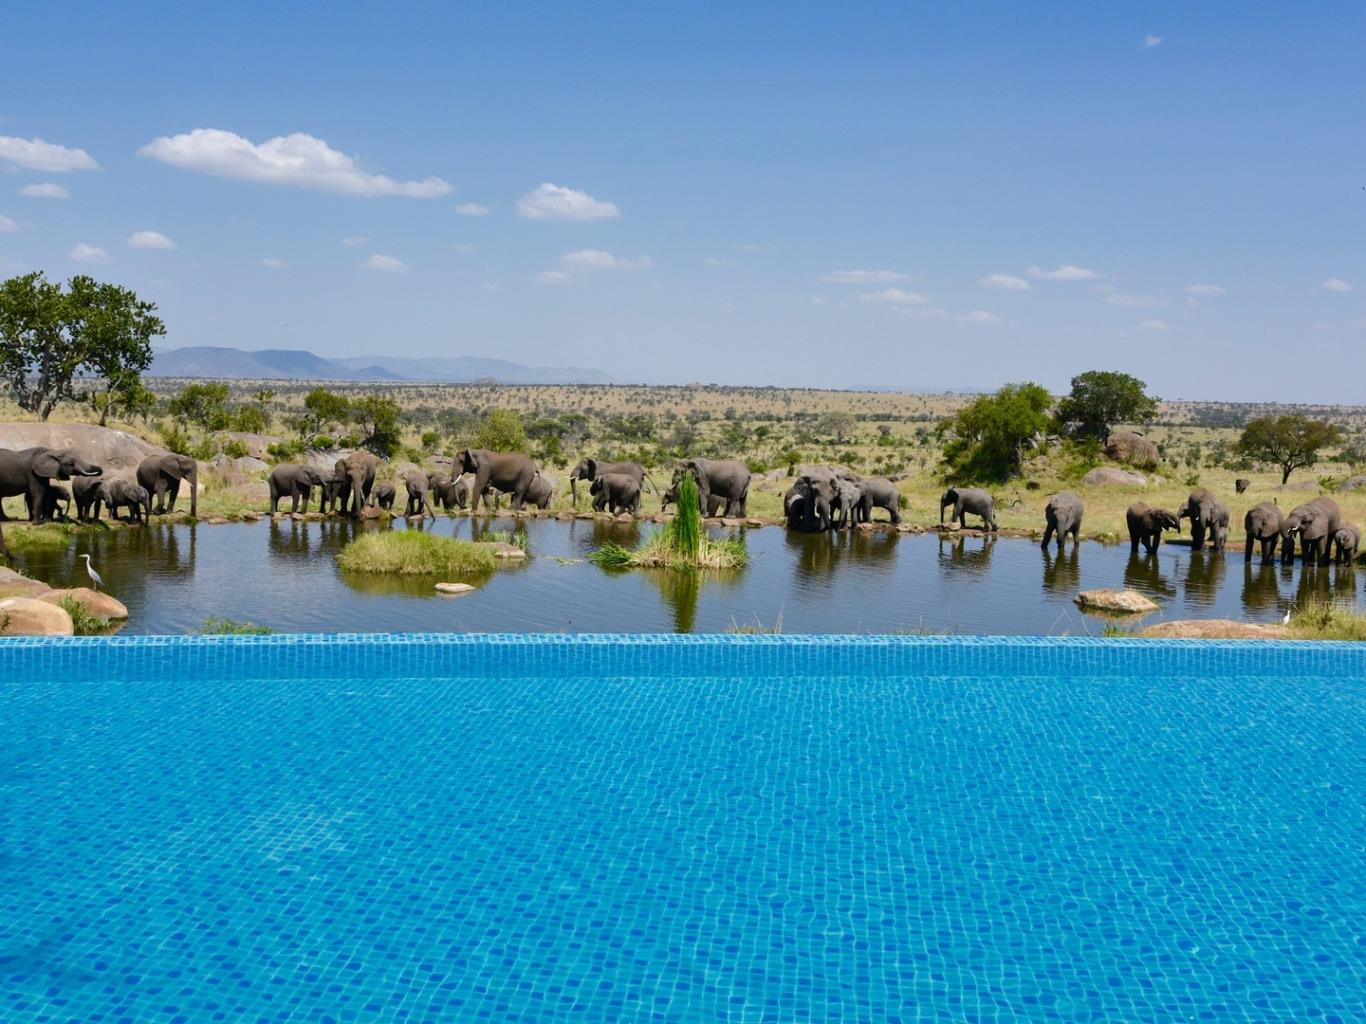 Four Seasons Safari Lodge Serengeti, Tanzania